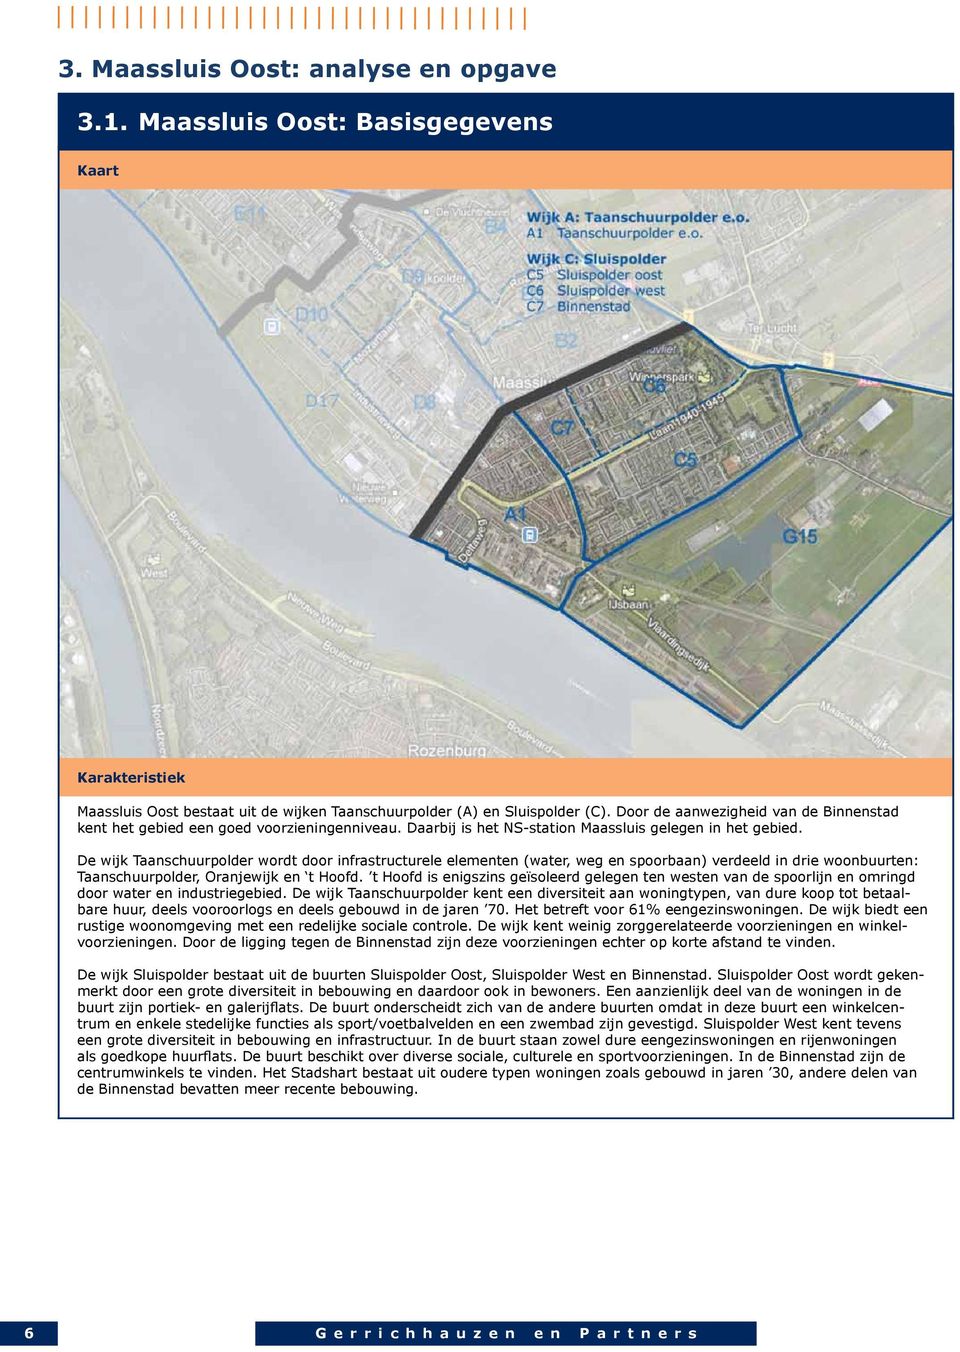 De wijk Taanschuurpolder wordt door infrastructurele elementen (water, weg en spoorbaan) verdeeld in drie woonbuurten: Taanschuurpolder, Oranjewijk en t Hoofd.